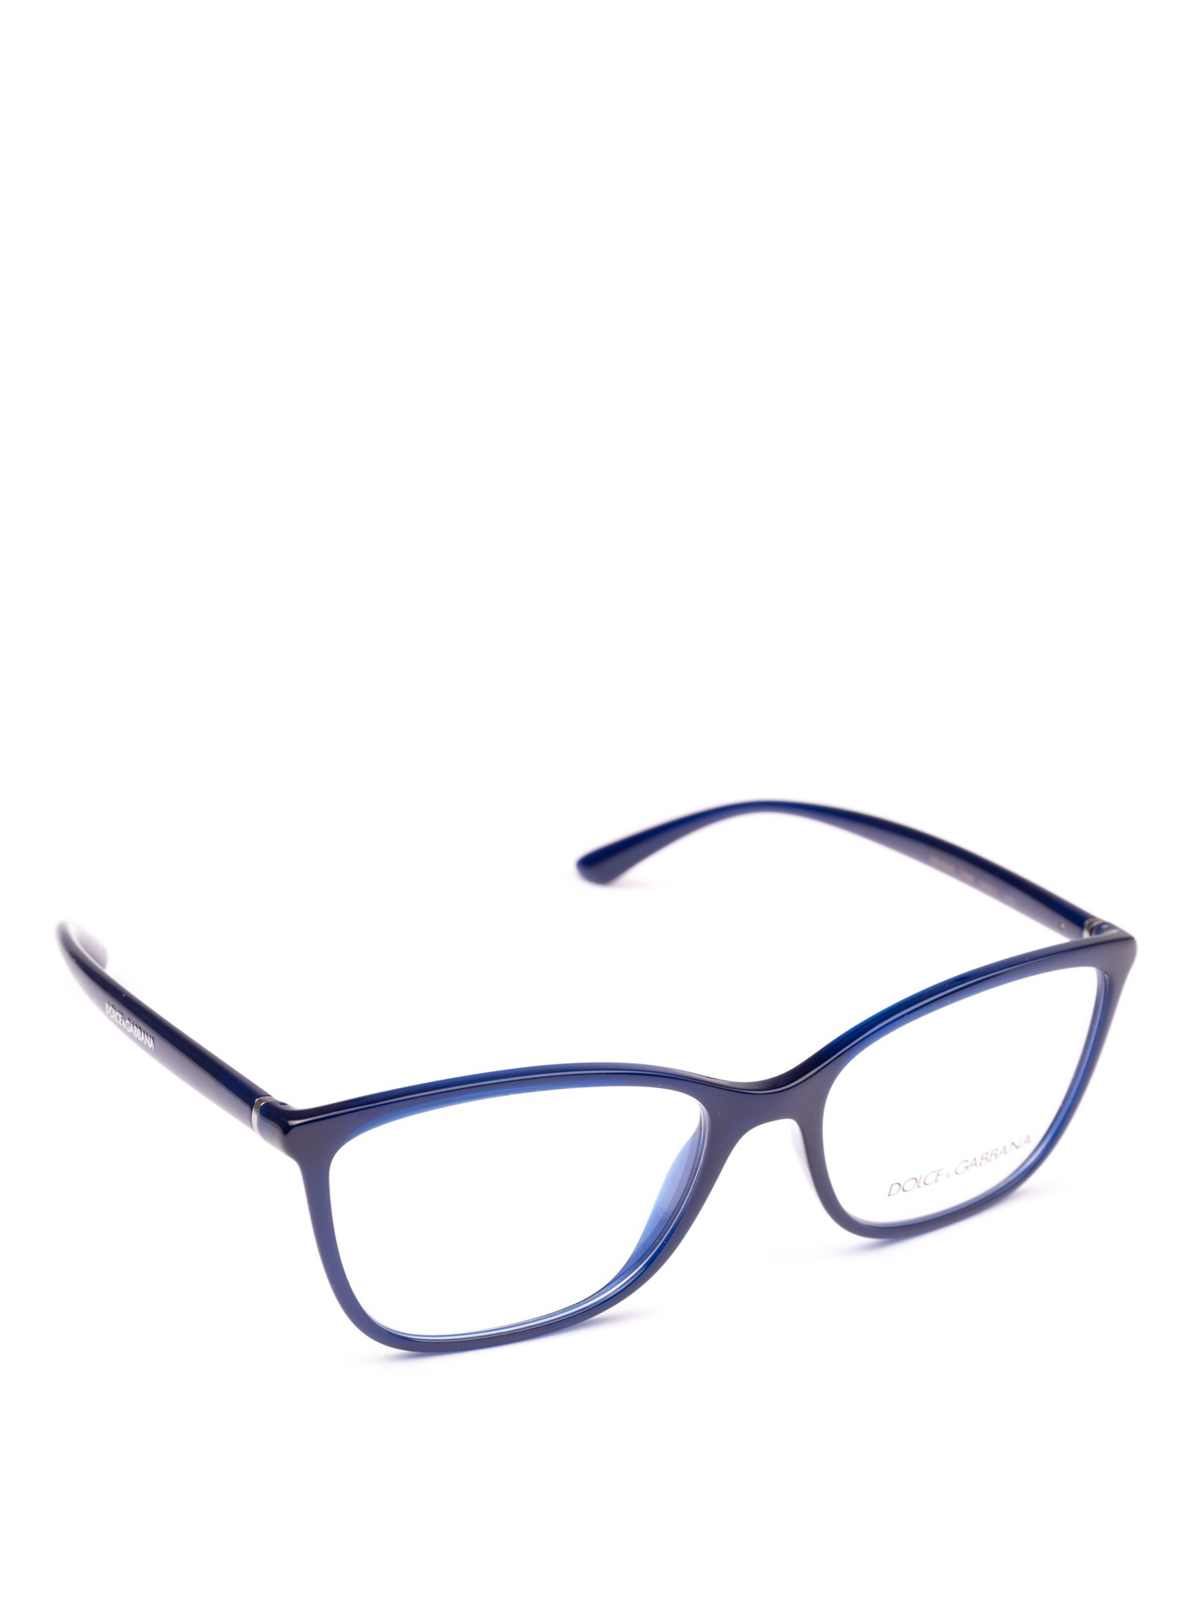 Glasses Dolce & Gabbana - Opal blue acetate rectangular eyeglasses -  DG50263094